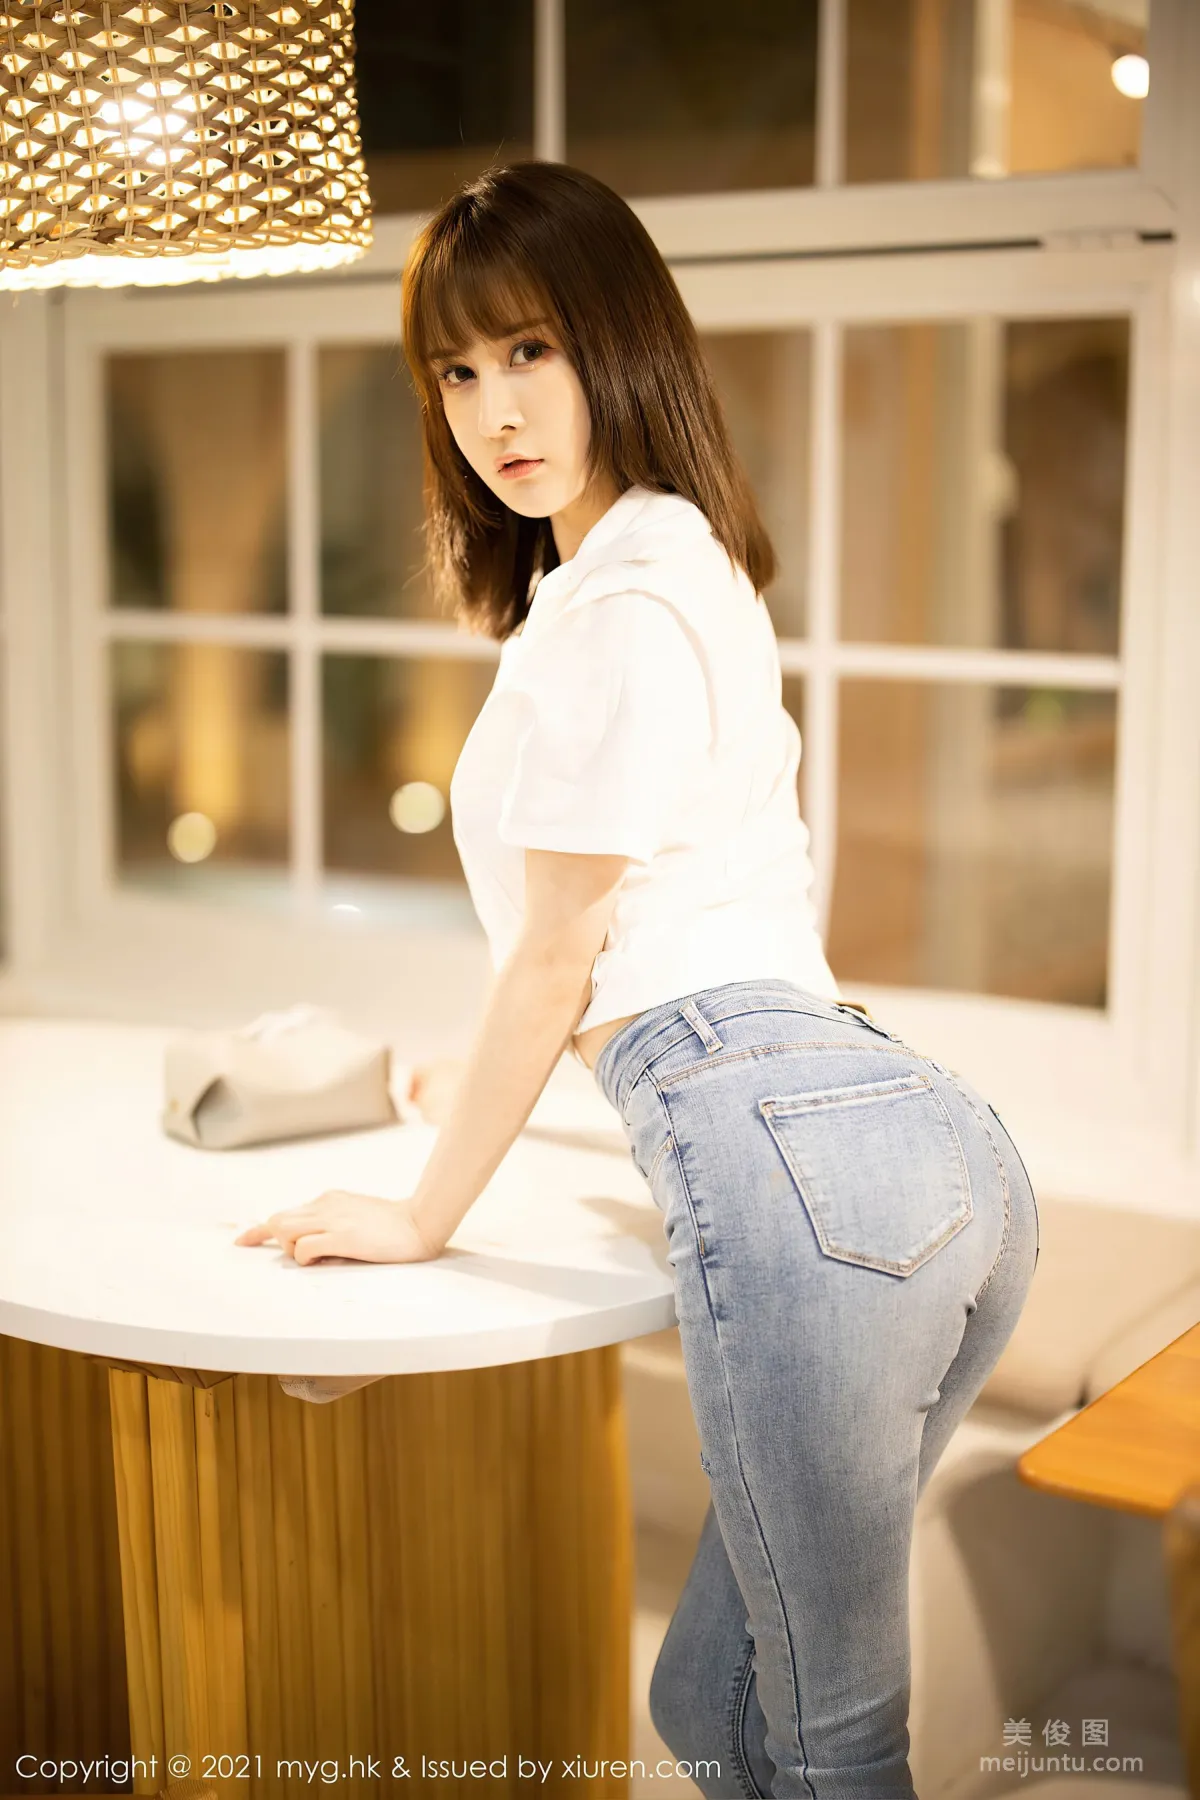 [美媛馆MyGirl] Vol.540 蔡文钰Abby - 经典的白衬衫与直爽牛仔裤5